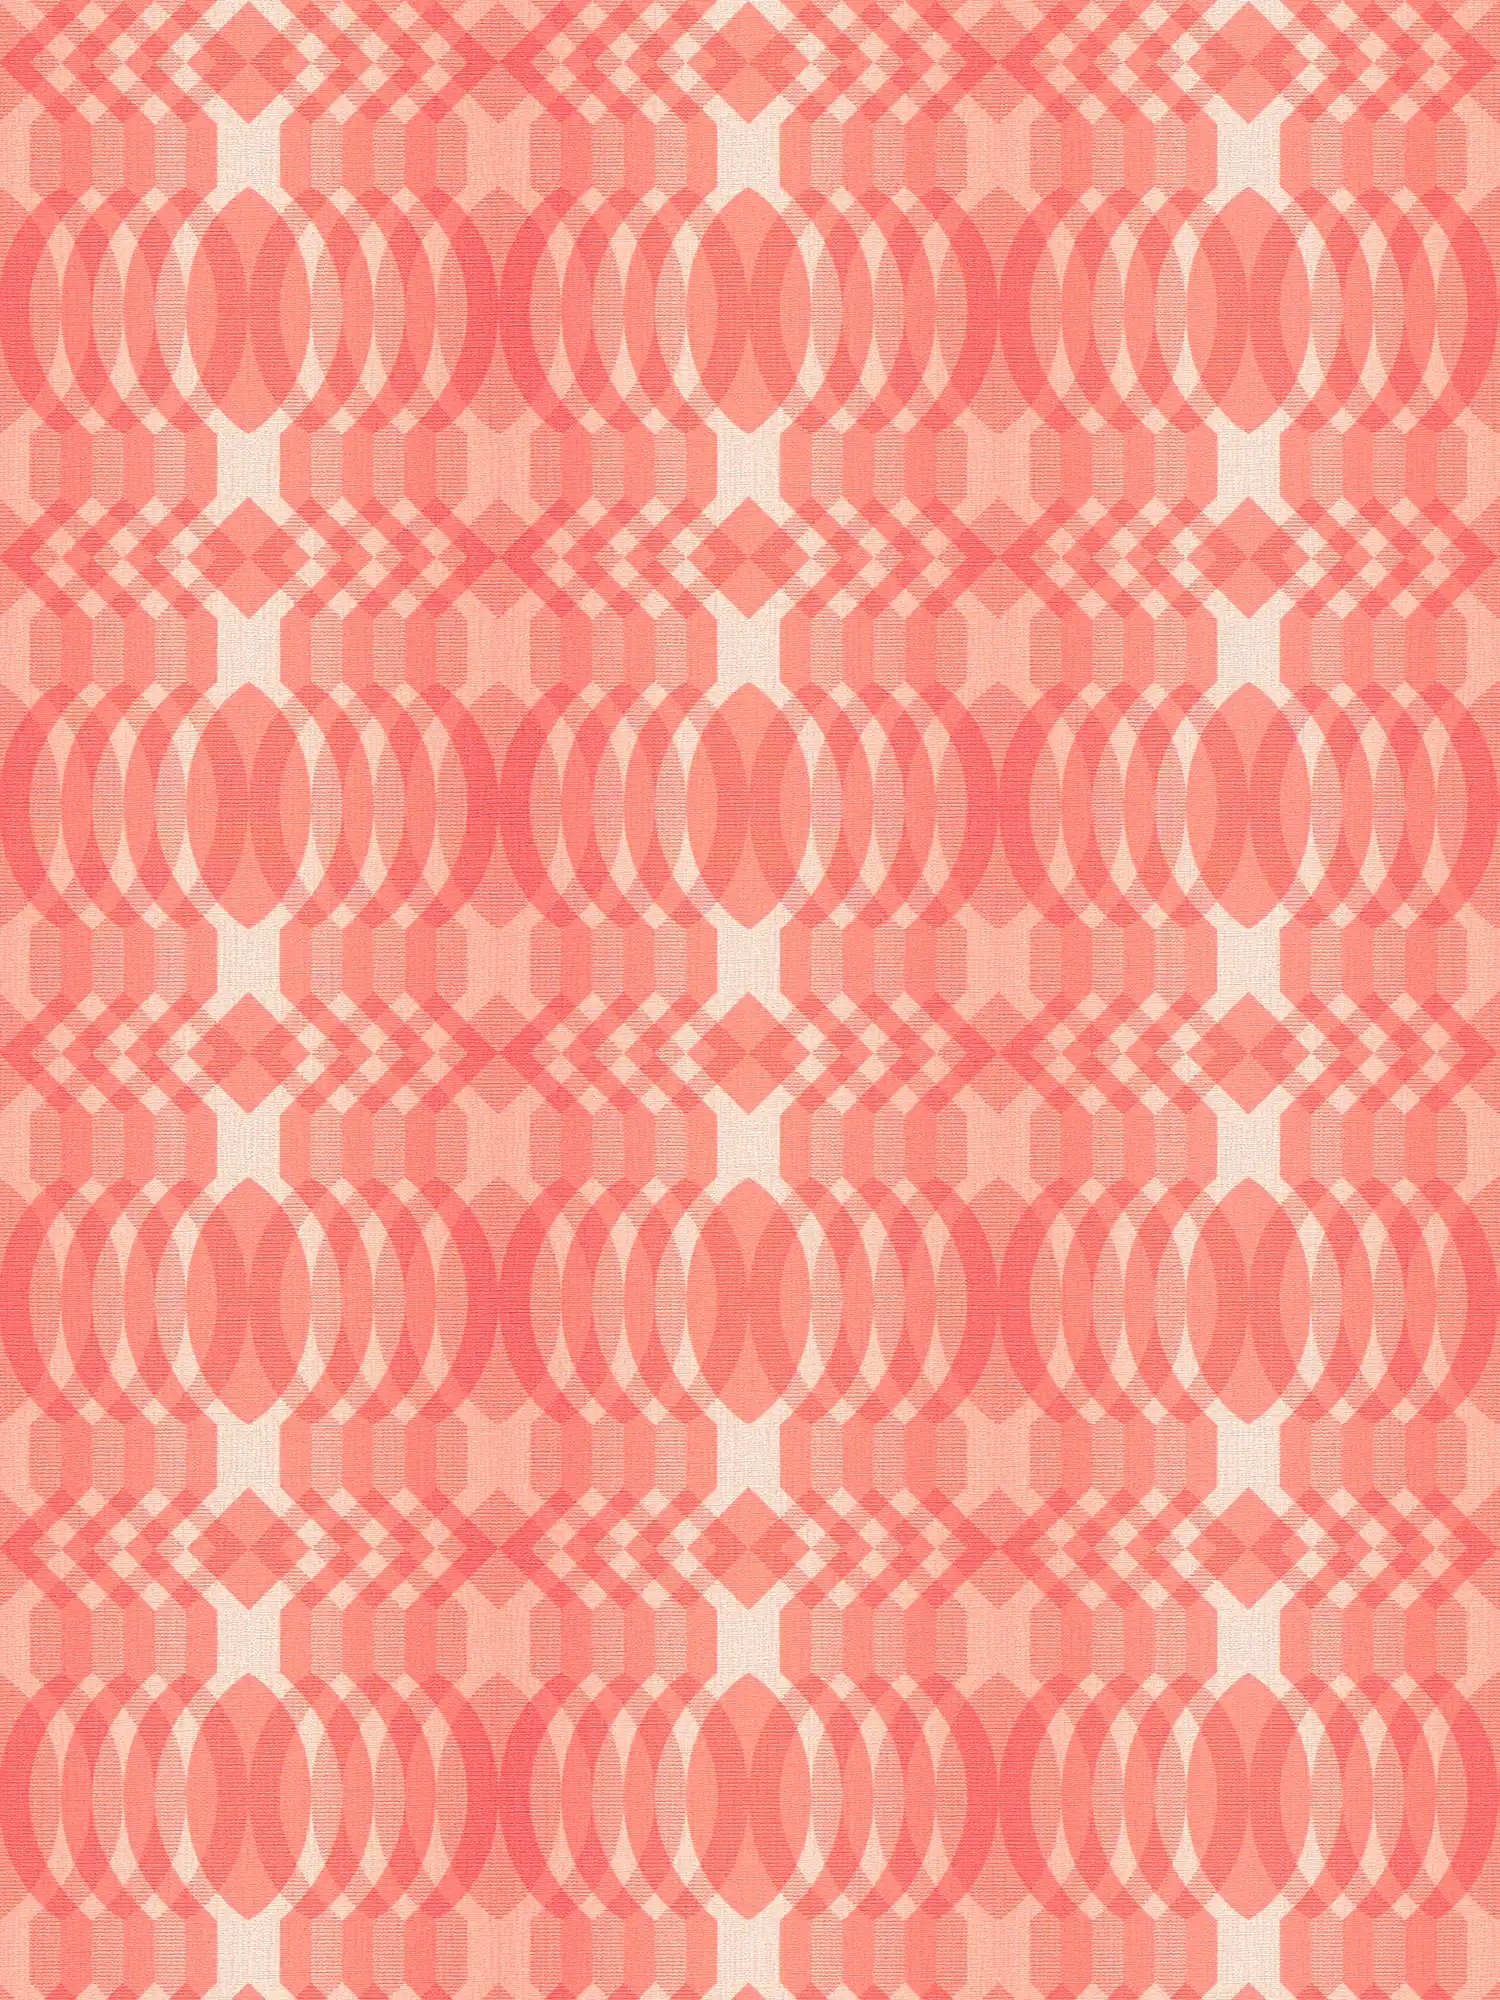 Motivo geometrico su carta da parati in tessuto non tessuto in stile retrò - rosso, crema, bianco
